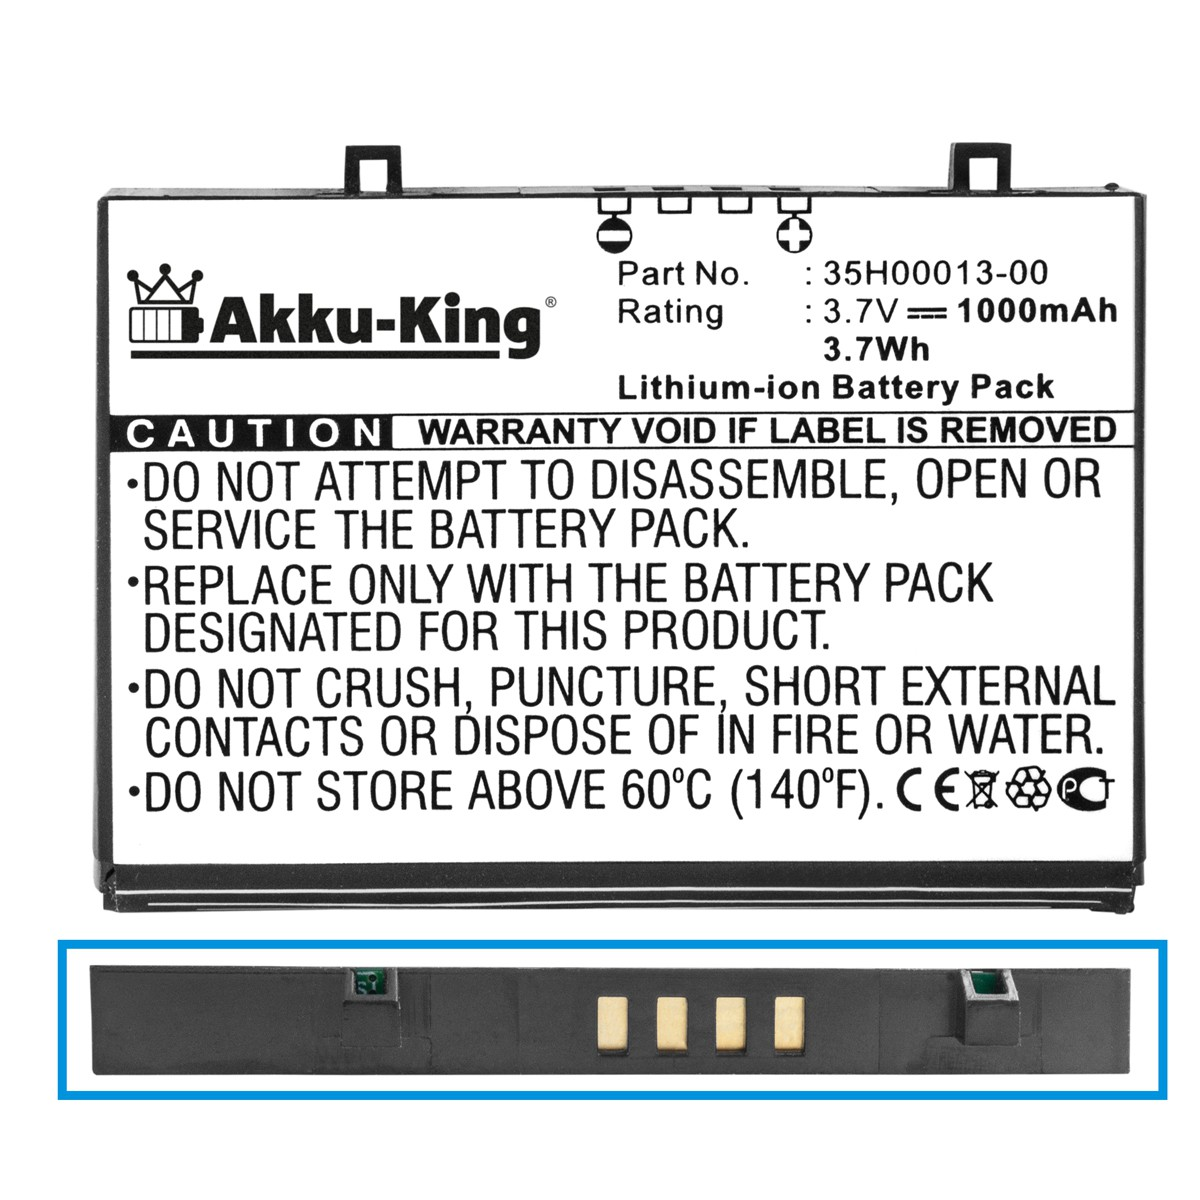 Akku 1000mAh kompatibel HP AKKU-KING 3.7 Handy-Akku, FA110A Volt, mit Li-Ion